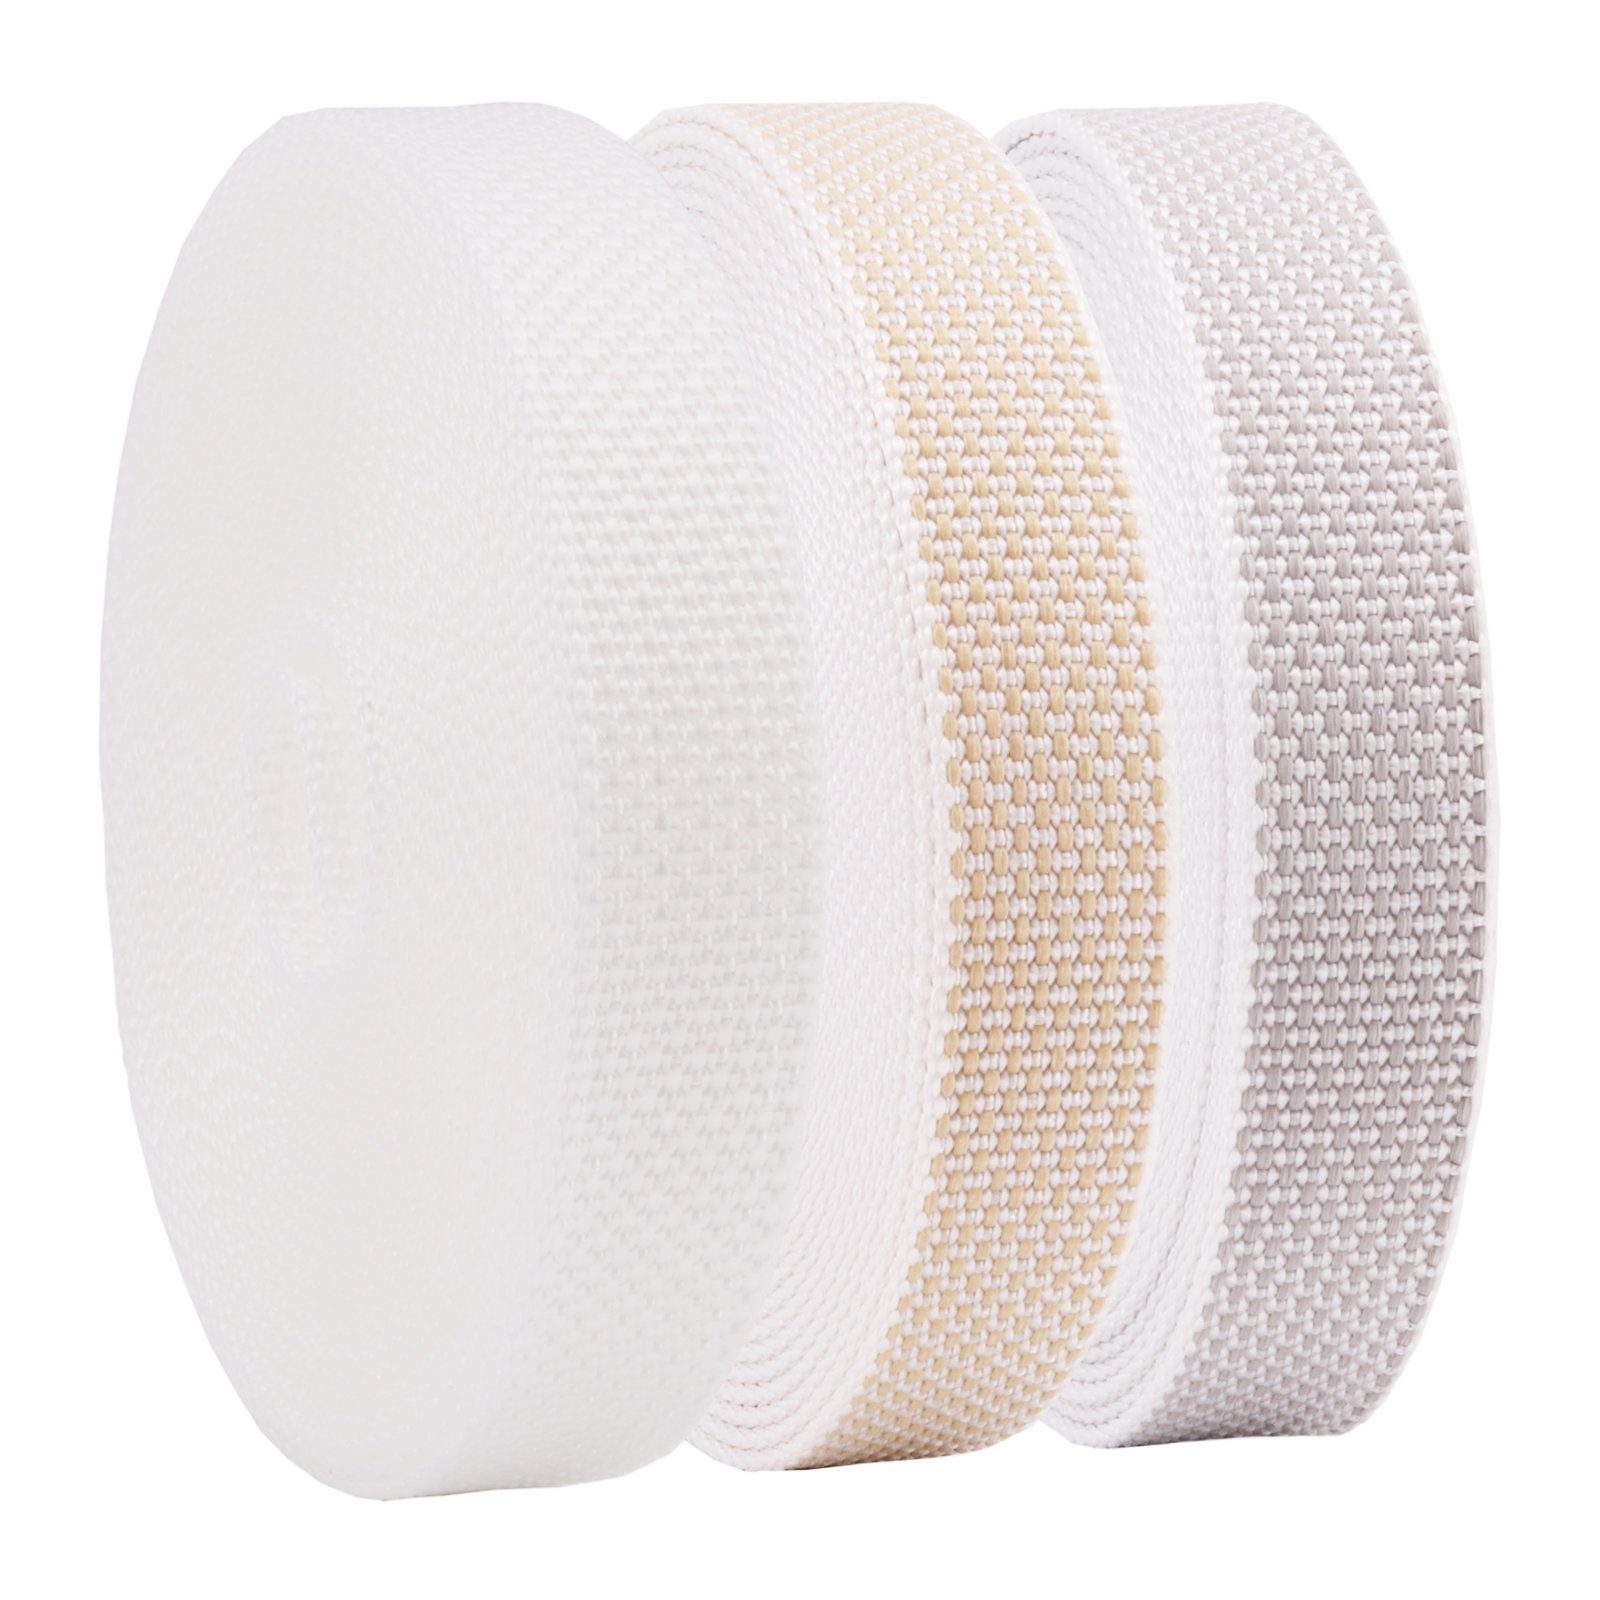 Nobily Rollladengurt 22/23 mm, 6m, Farbe: Rollladen Beige, (1-tlg), Jalousie Verstärkte-Ausführung / Rollladengurt für Gurtband Weiß, Grau und